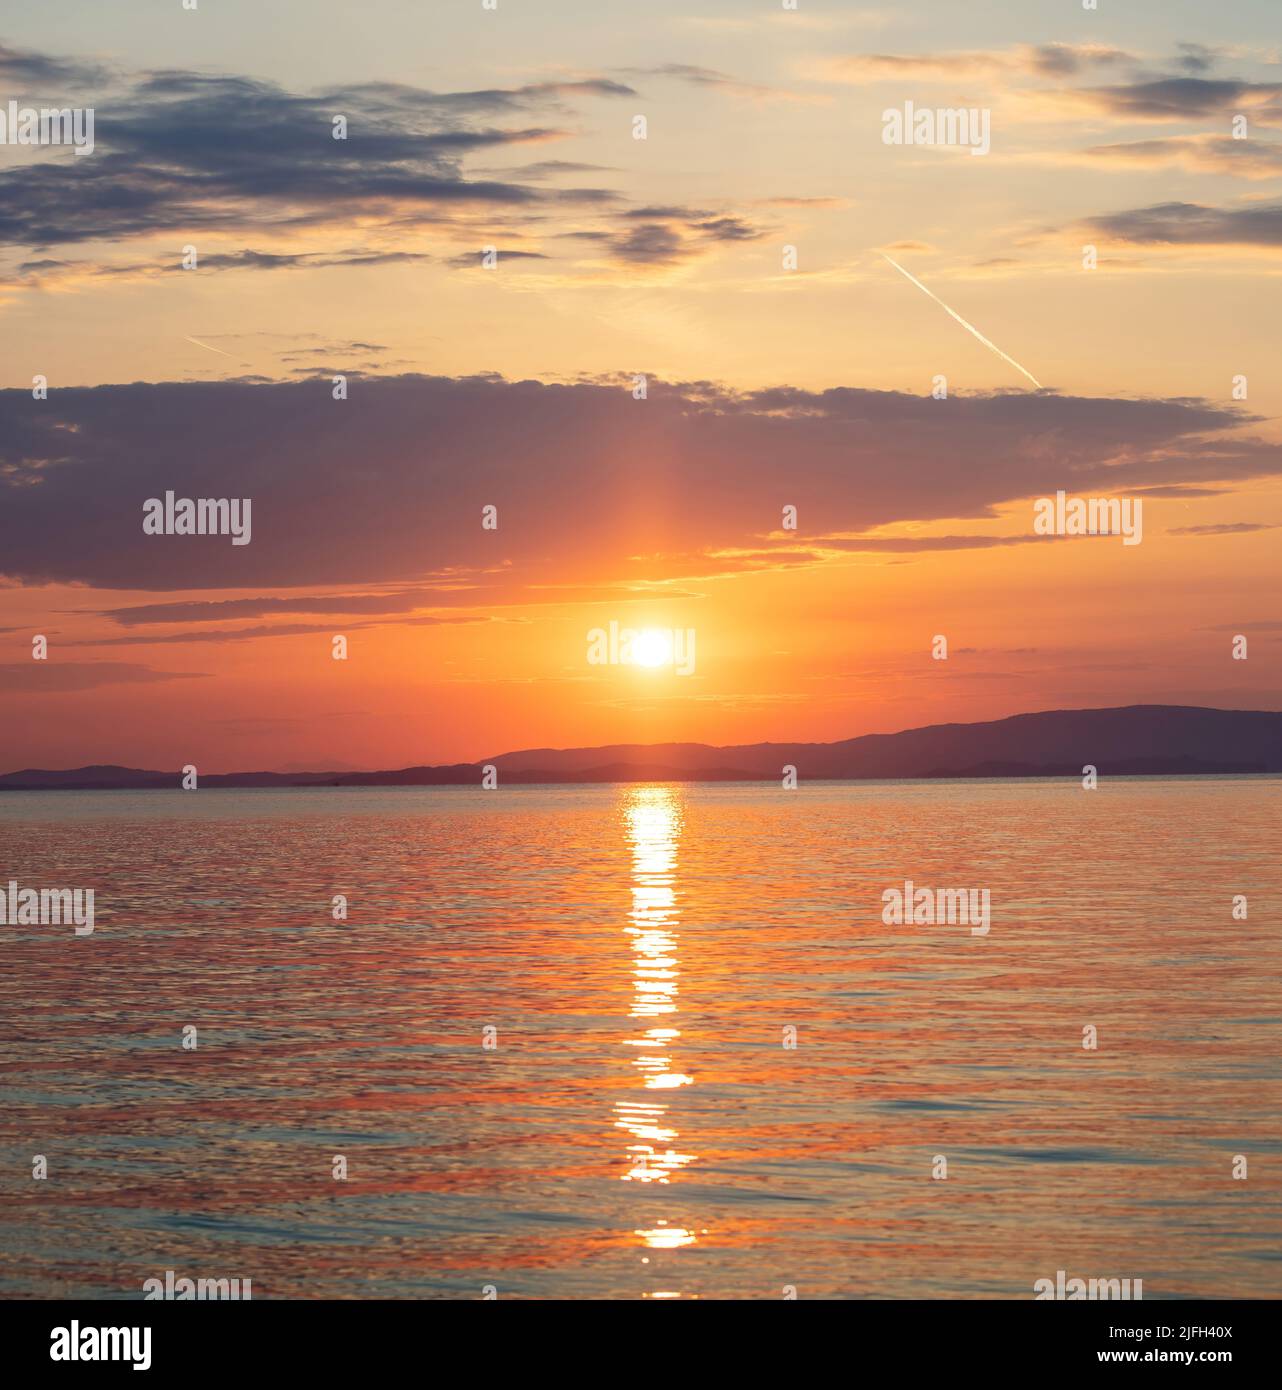 Tramonto sul Mar Egeo. Grecia. Sole che cade dietro terra scura, riflessi dorati su ondulato acqua dell'oceano. Cielo e nuvole di colore arancione Foto Stock